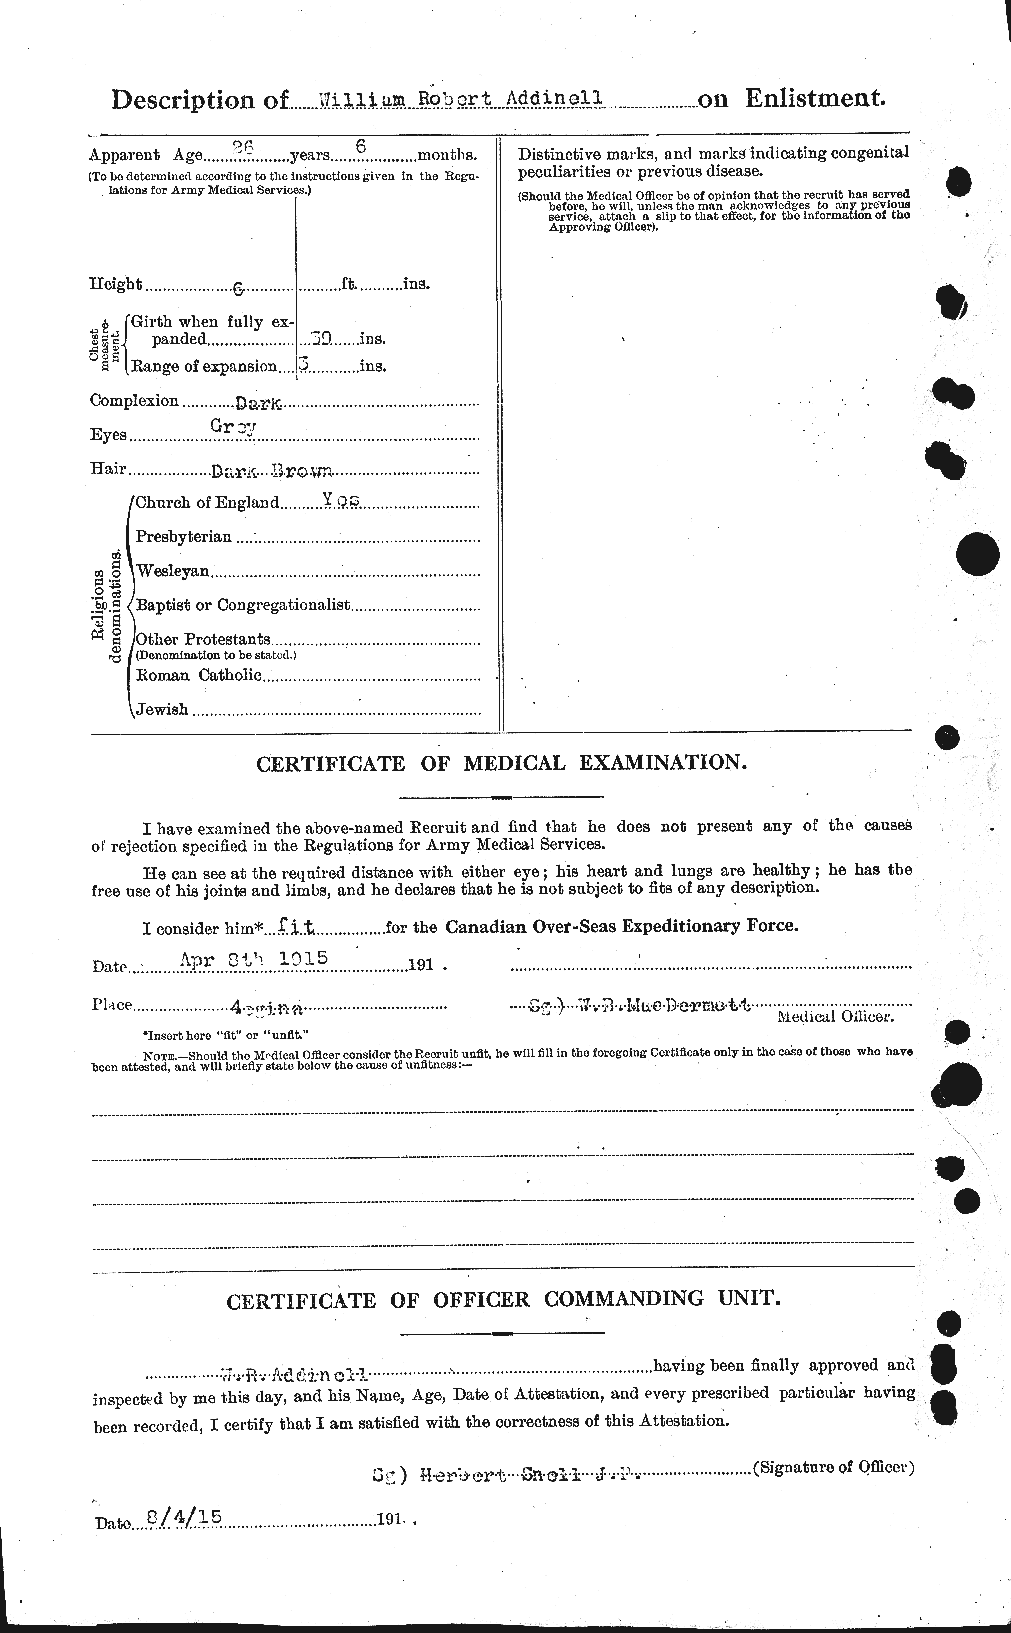 Dossiers du Personnel de la Première Guerre mondiale - CEC 202462b